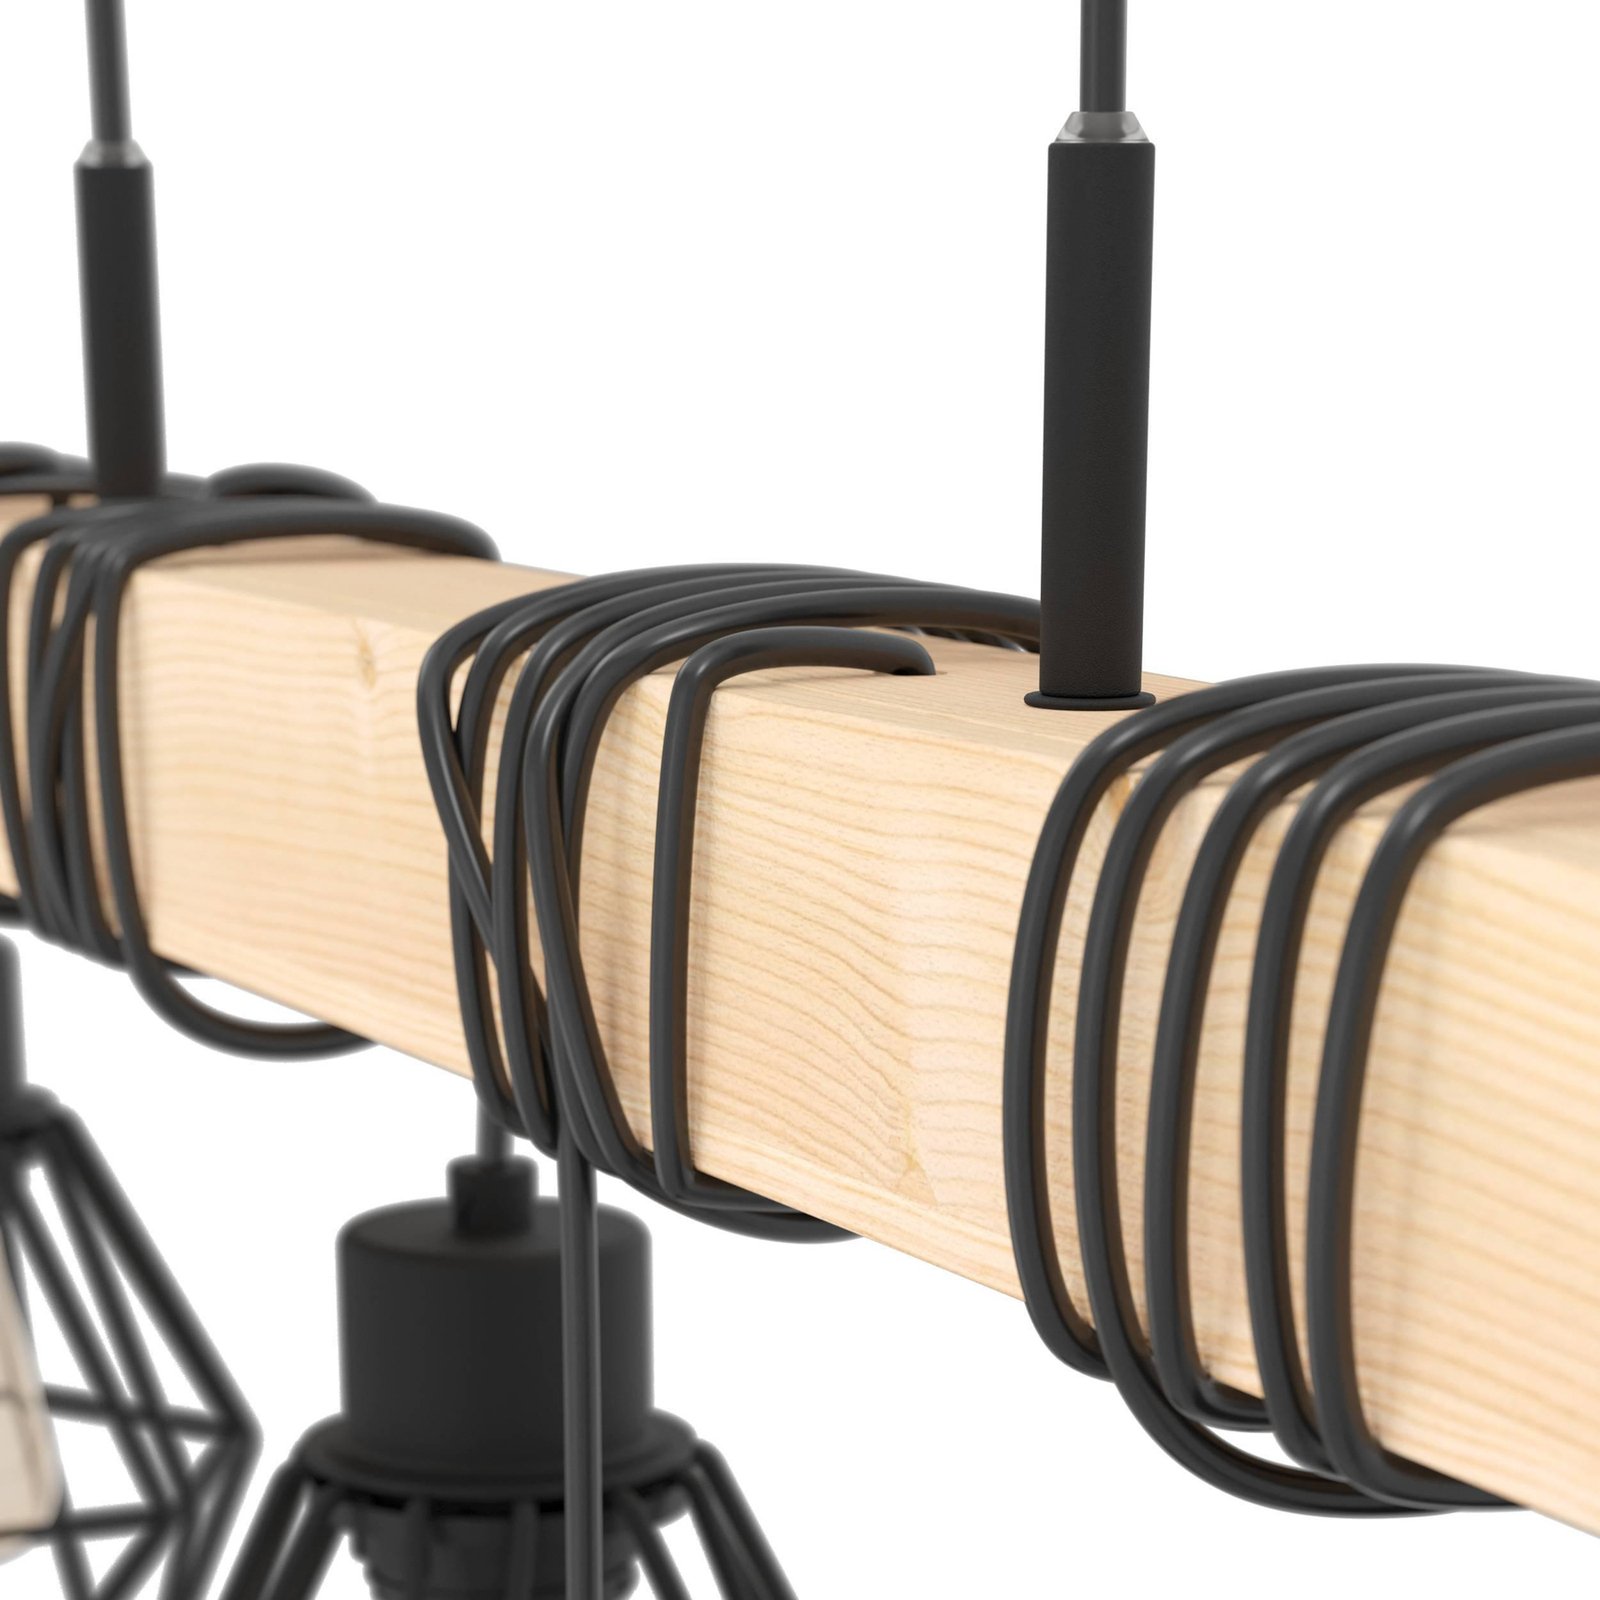 Townshend hanglamp, lengte 100 cm, zwart/eiken, 6-lamps.